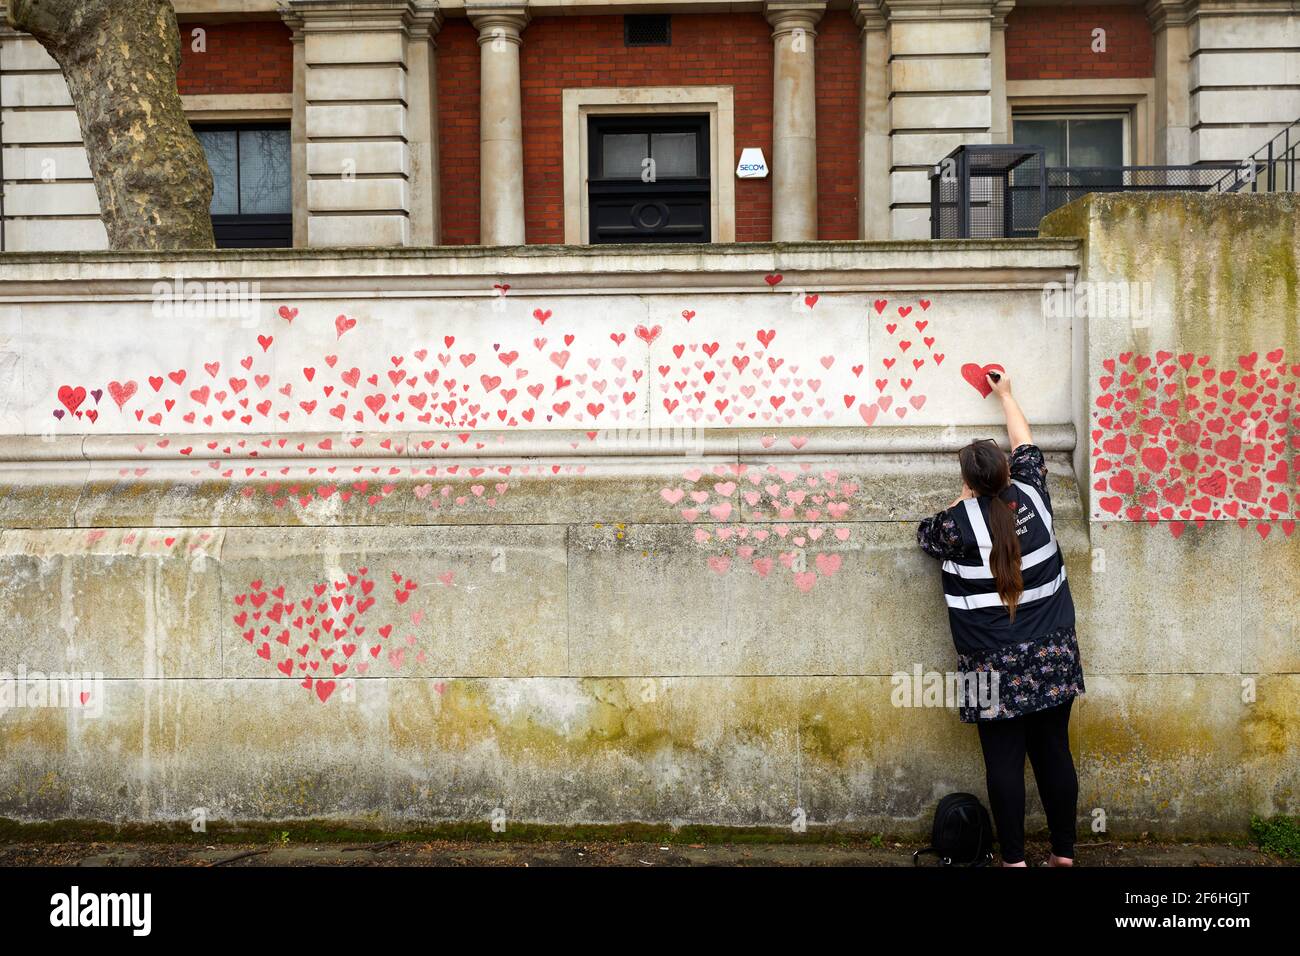 Londra, UK - 31 Mar 2021: I familiari e gli amici delle vittime di Covid-19 dipingono i cuori rossi al National Covid Memorial Wall, di fronte al St. Thomas' Hospital nel centro di Londra. Ogni cuore disegnato individualmente rappresenta una vittima del virus del coronavirus. Foto Stock